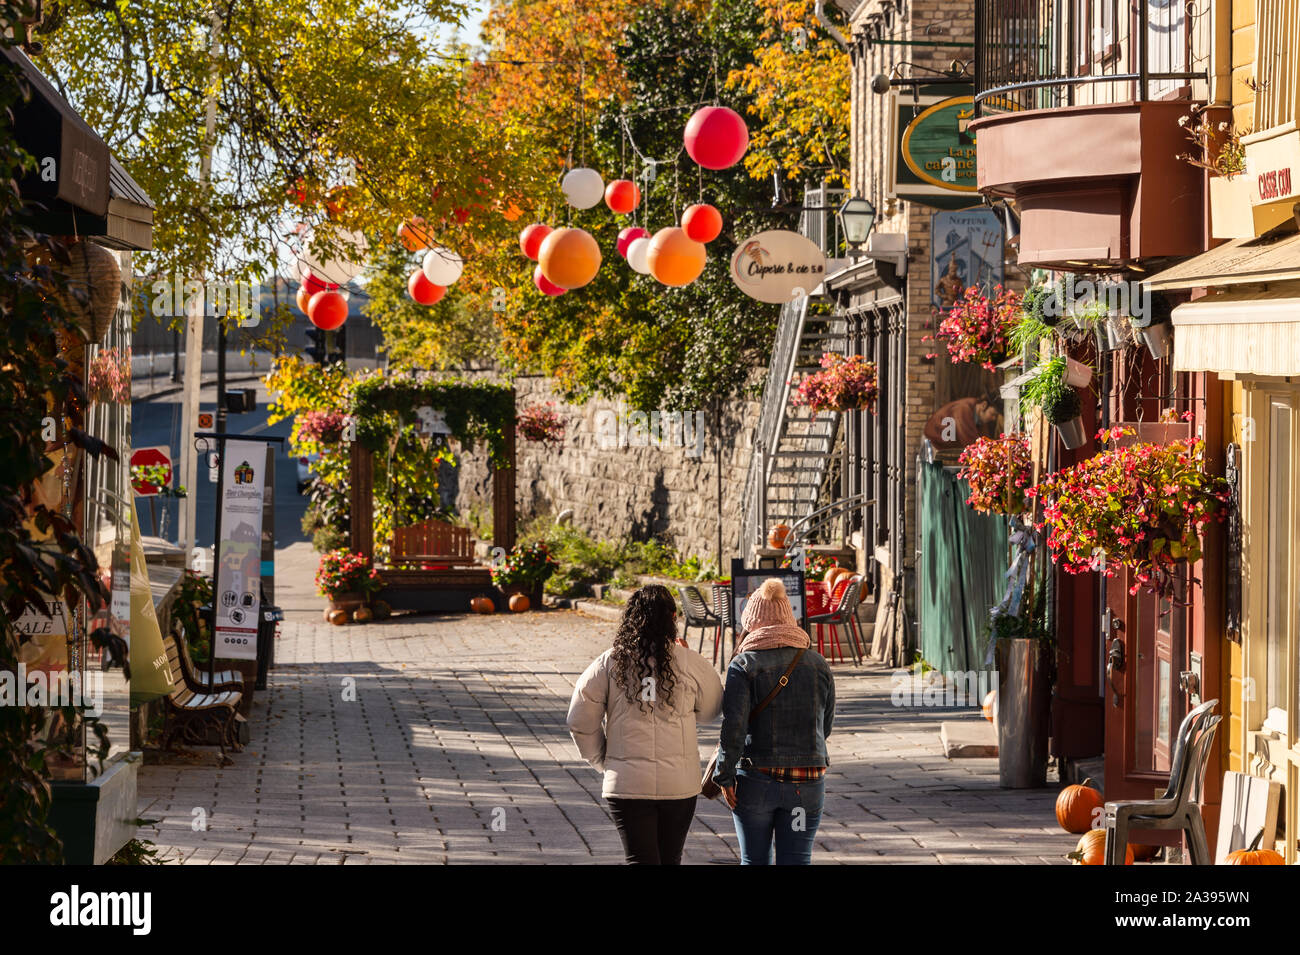 La ville de Québec, Canada - 5 octobre 2019 : le Petit Champlain street dans la vieille ville de Québec. Banque D'Images